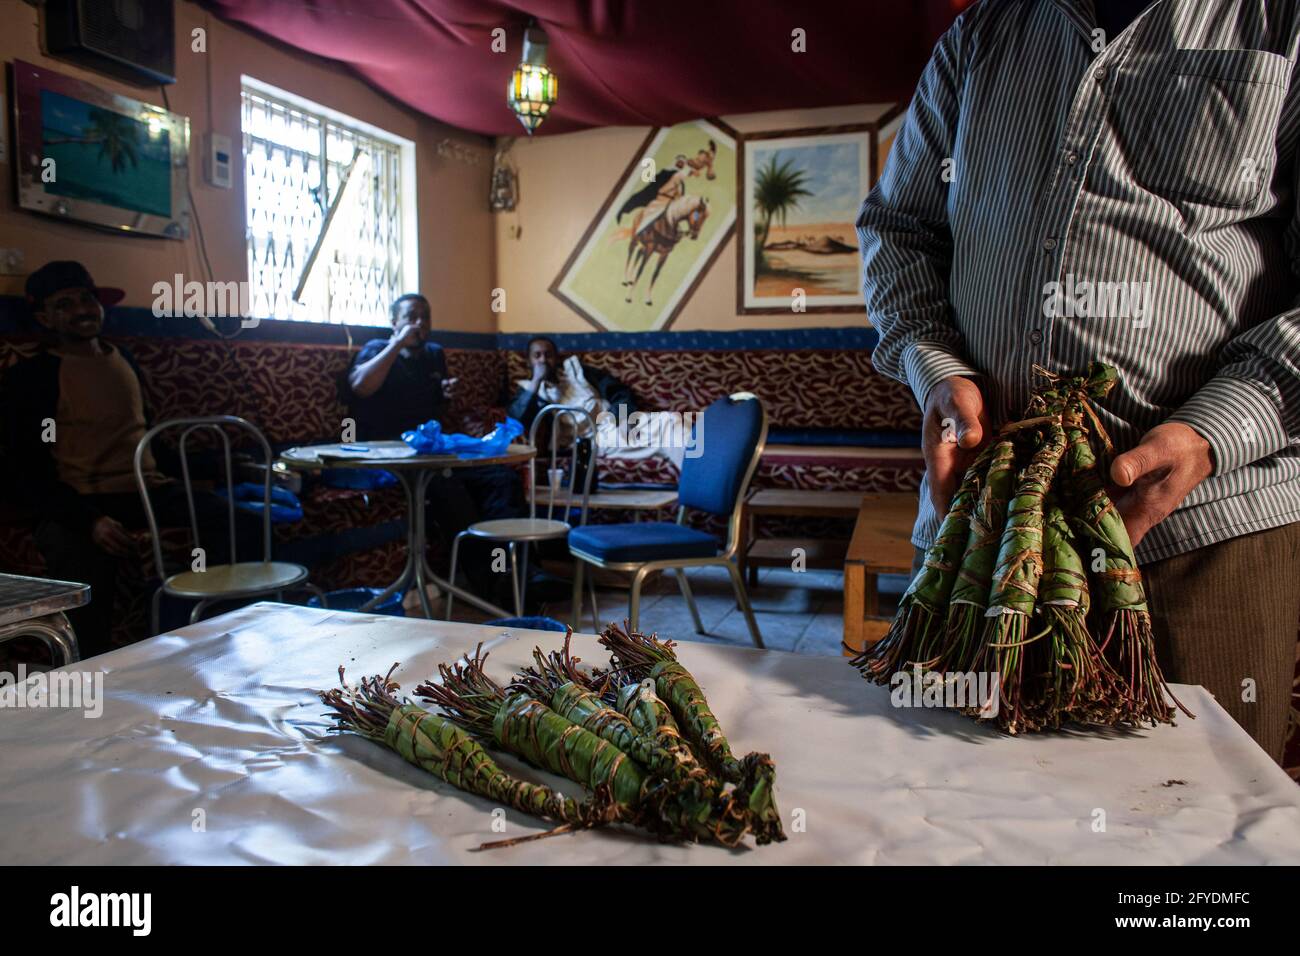 Camden, Londra, Regno Unito. La droga Khat sul tavolo nel locale caffè somalo. La droga usata principalmente dai somaliani diventa illegale nel Regno Unito. Foto Stock